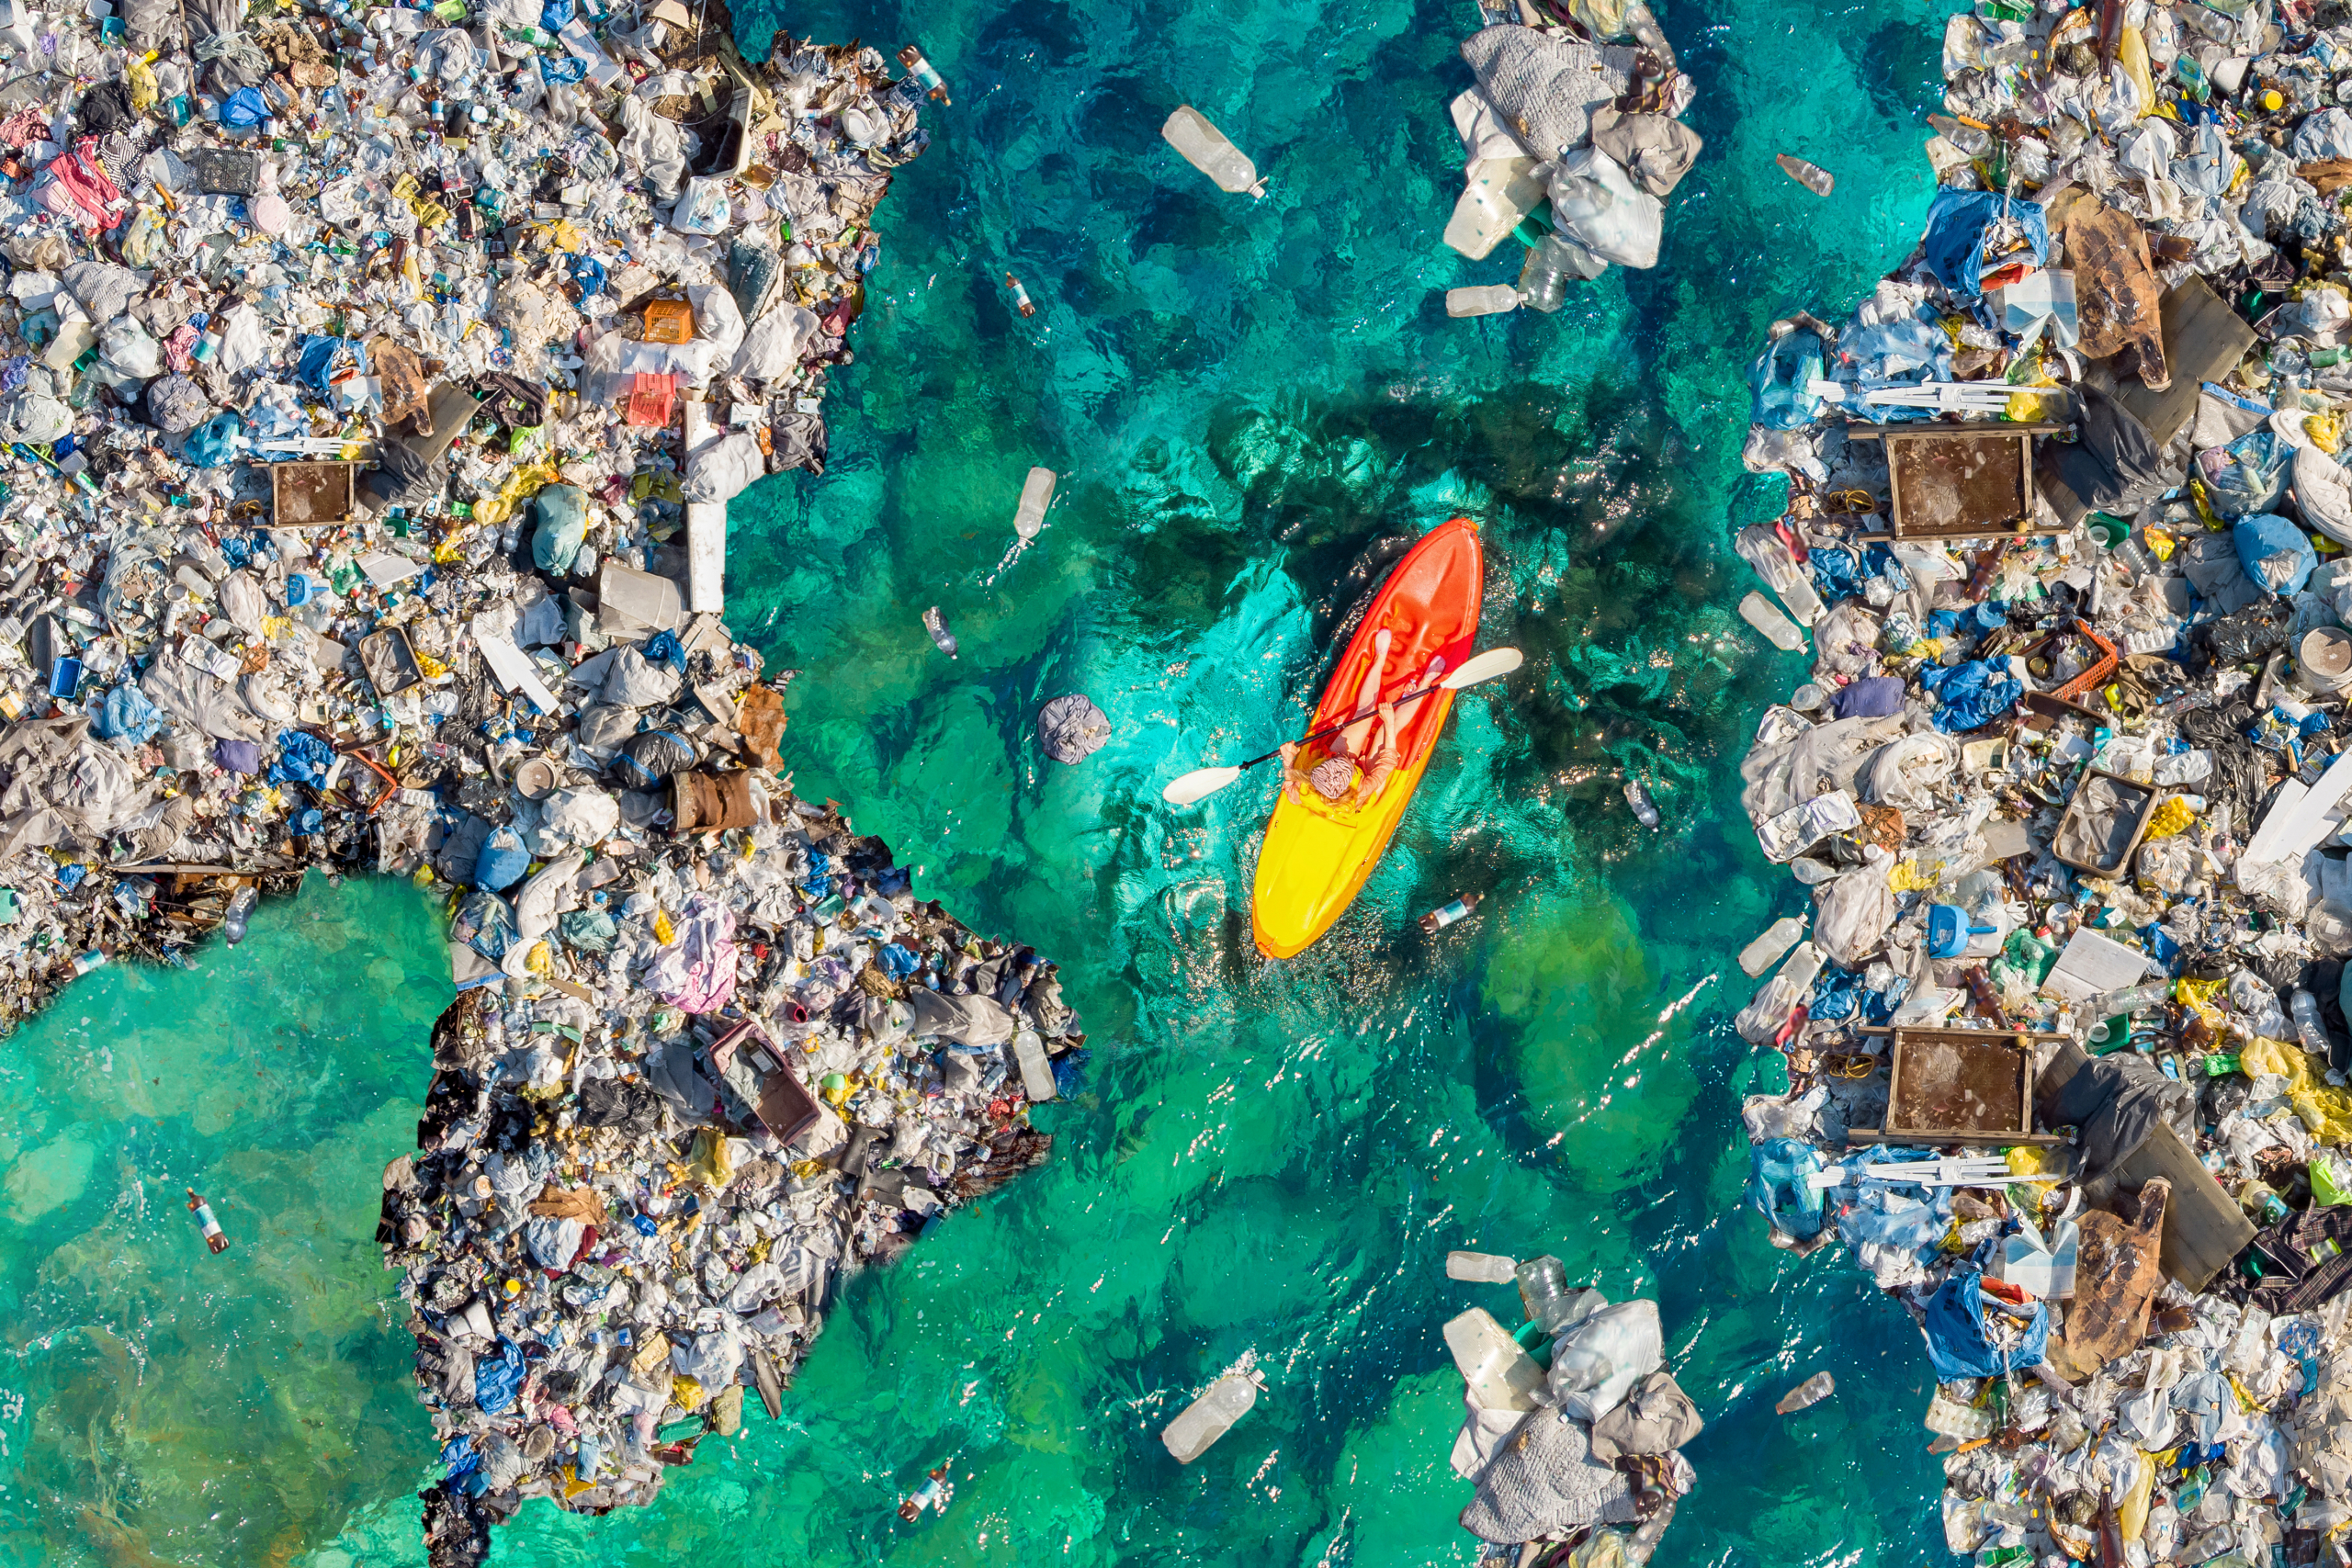 Robot "ajkula" sakuplja 21.000 plastičnih boca iz vode u jednom danu! Da li je to dobro ekološko rešenje?